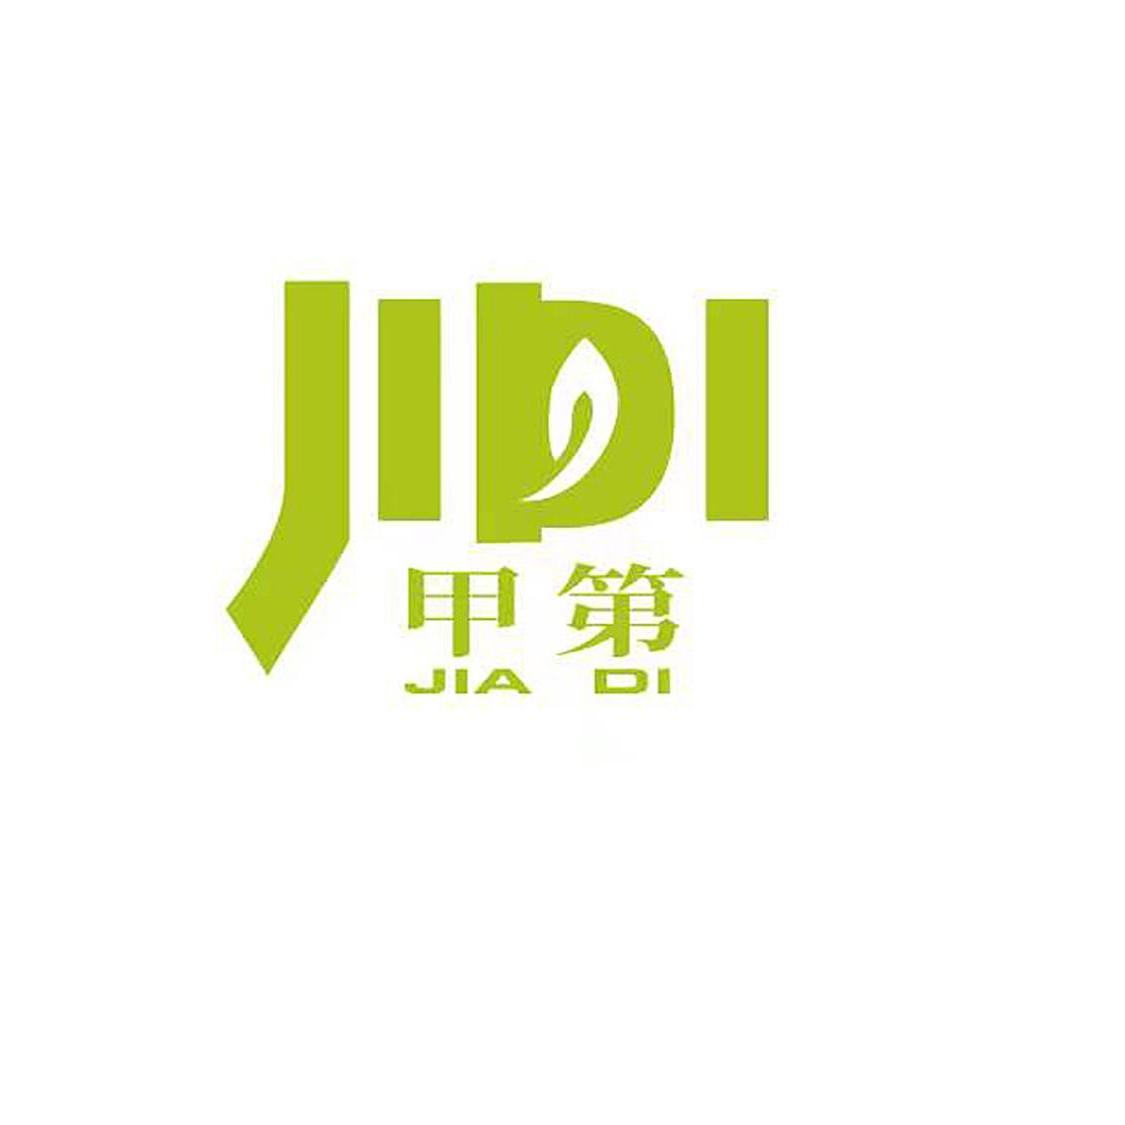 南京甲第生物科技有限公司 公司logo